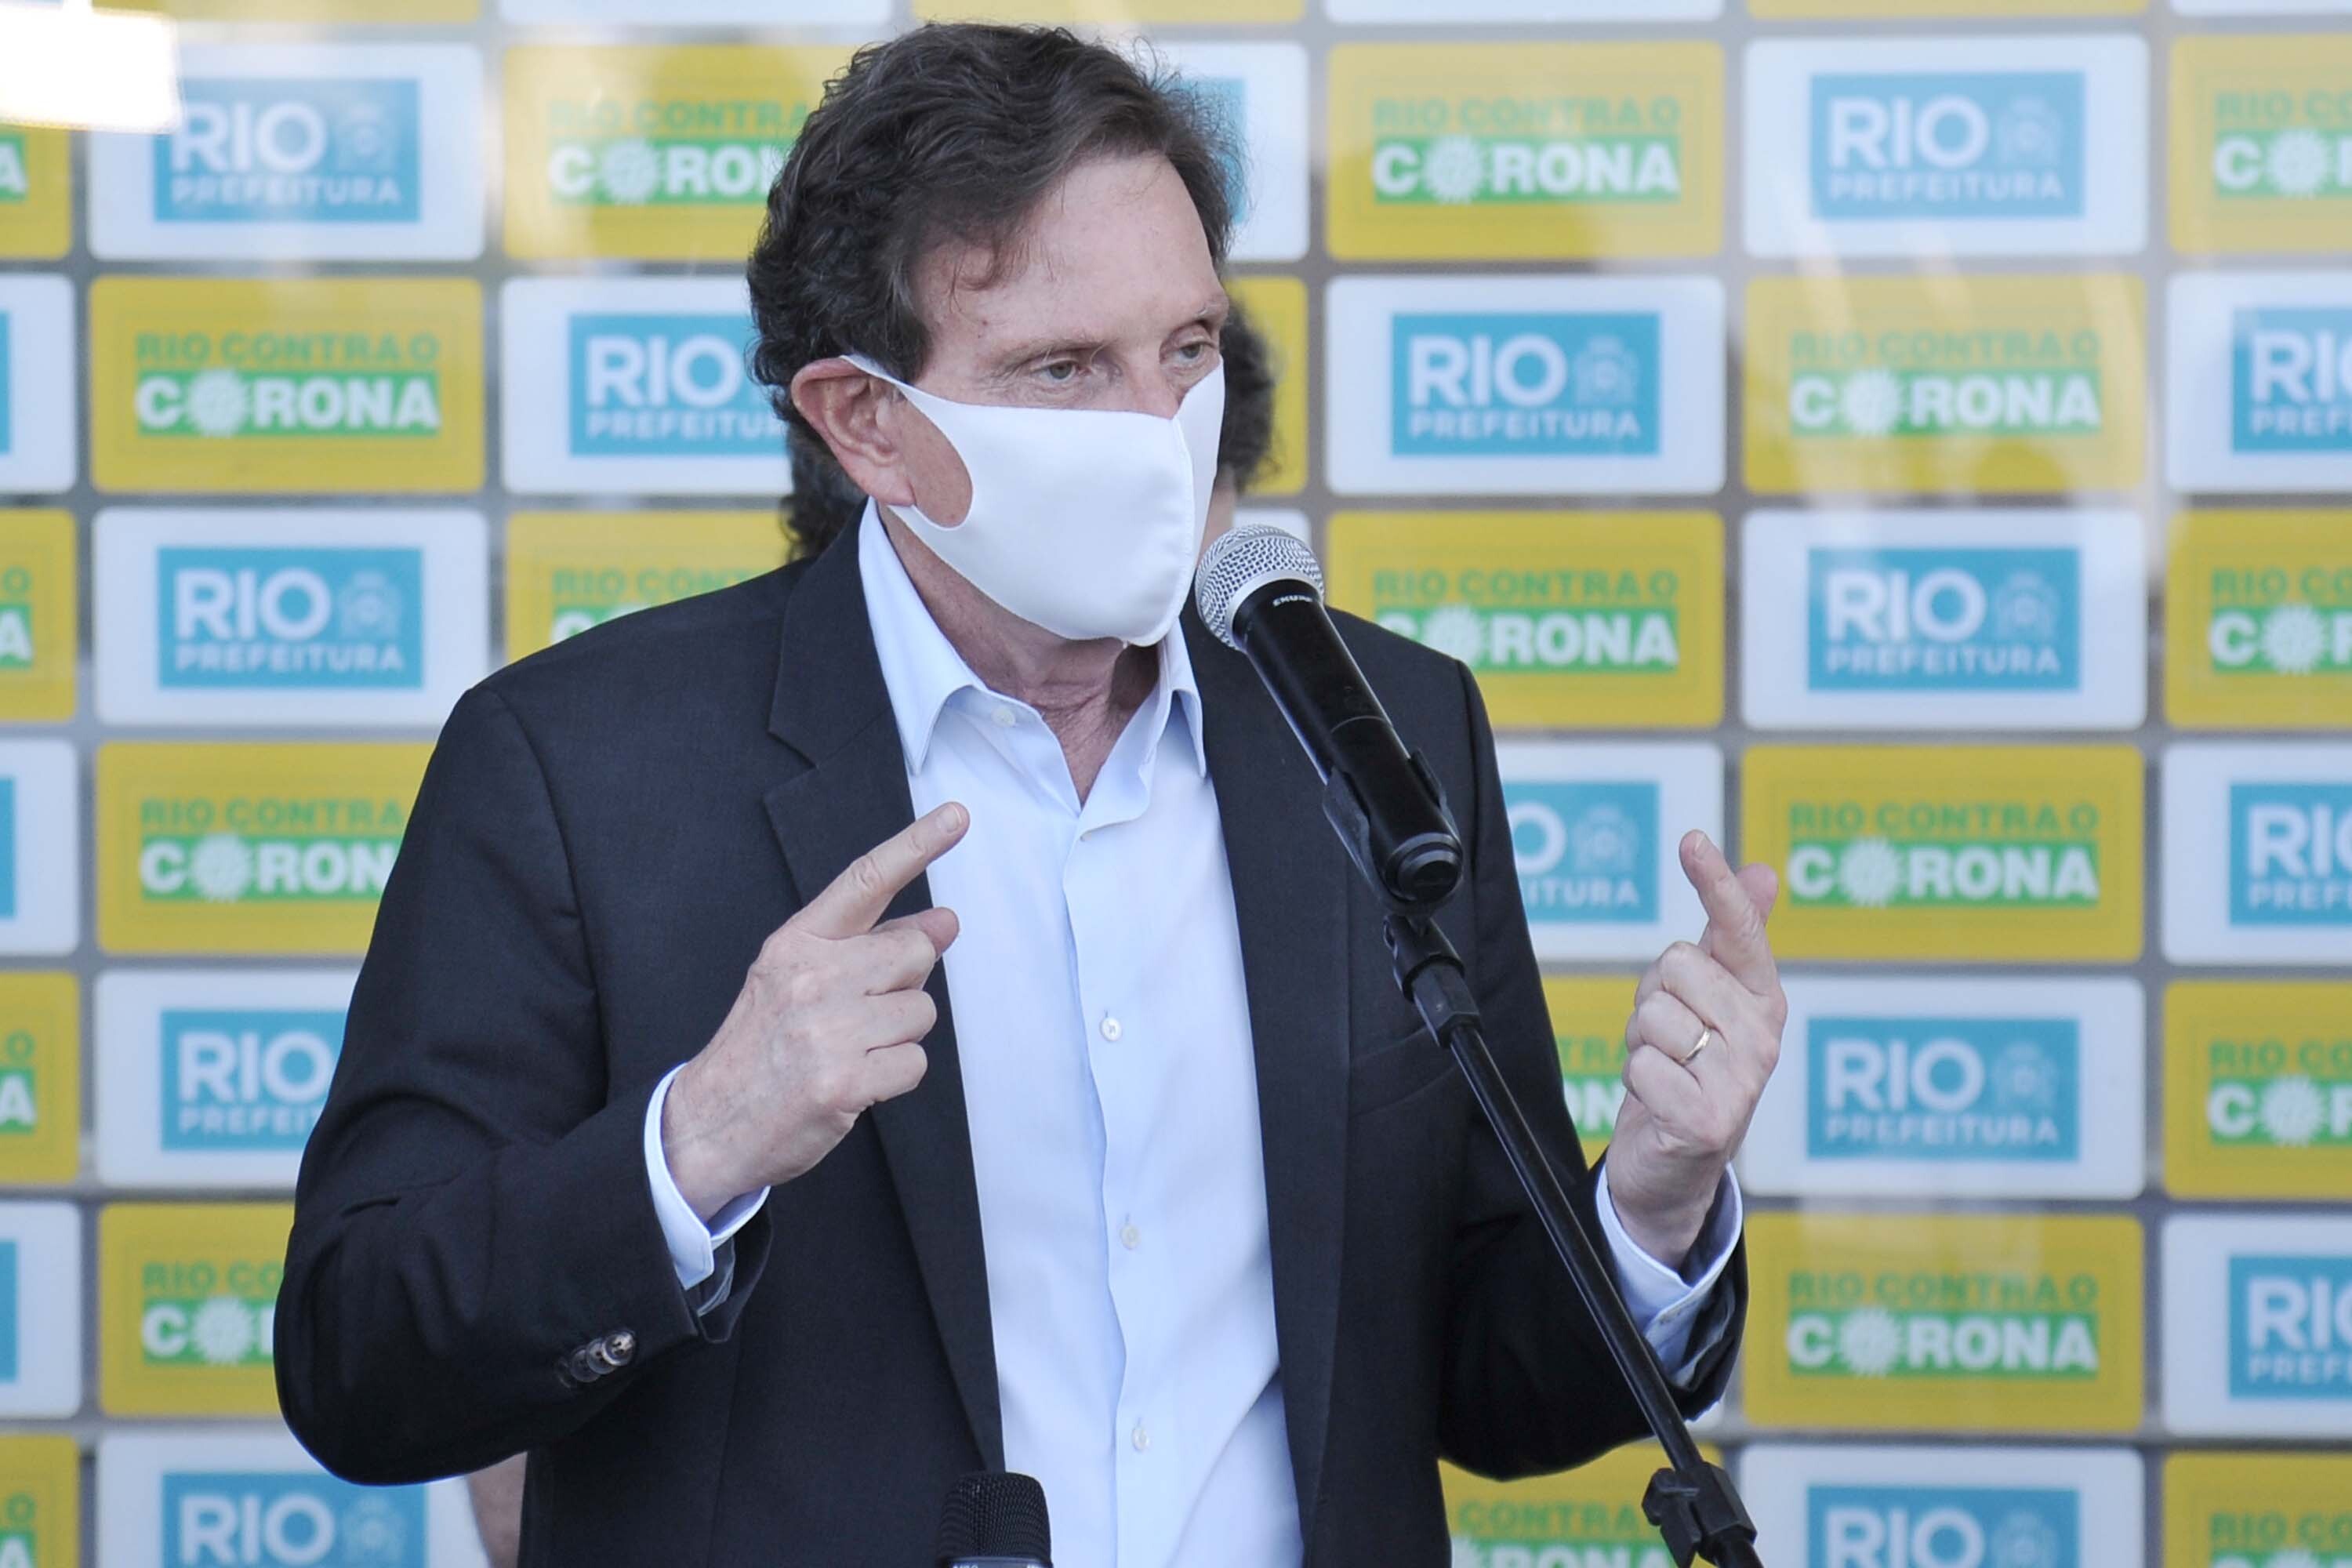 Covid-19: Justiça suspende autorização para cultos religiosos no Rio